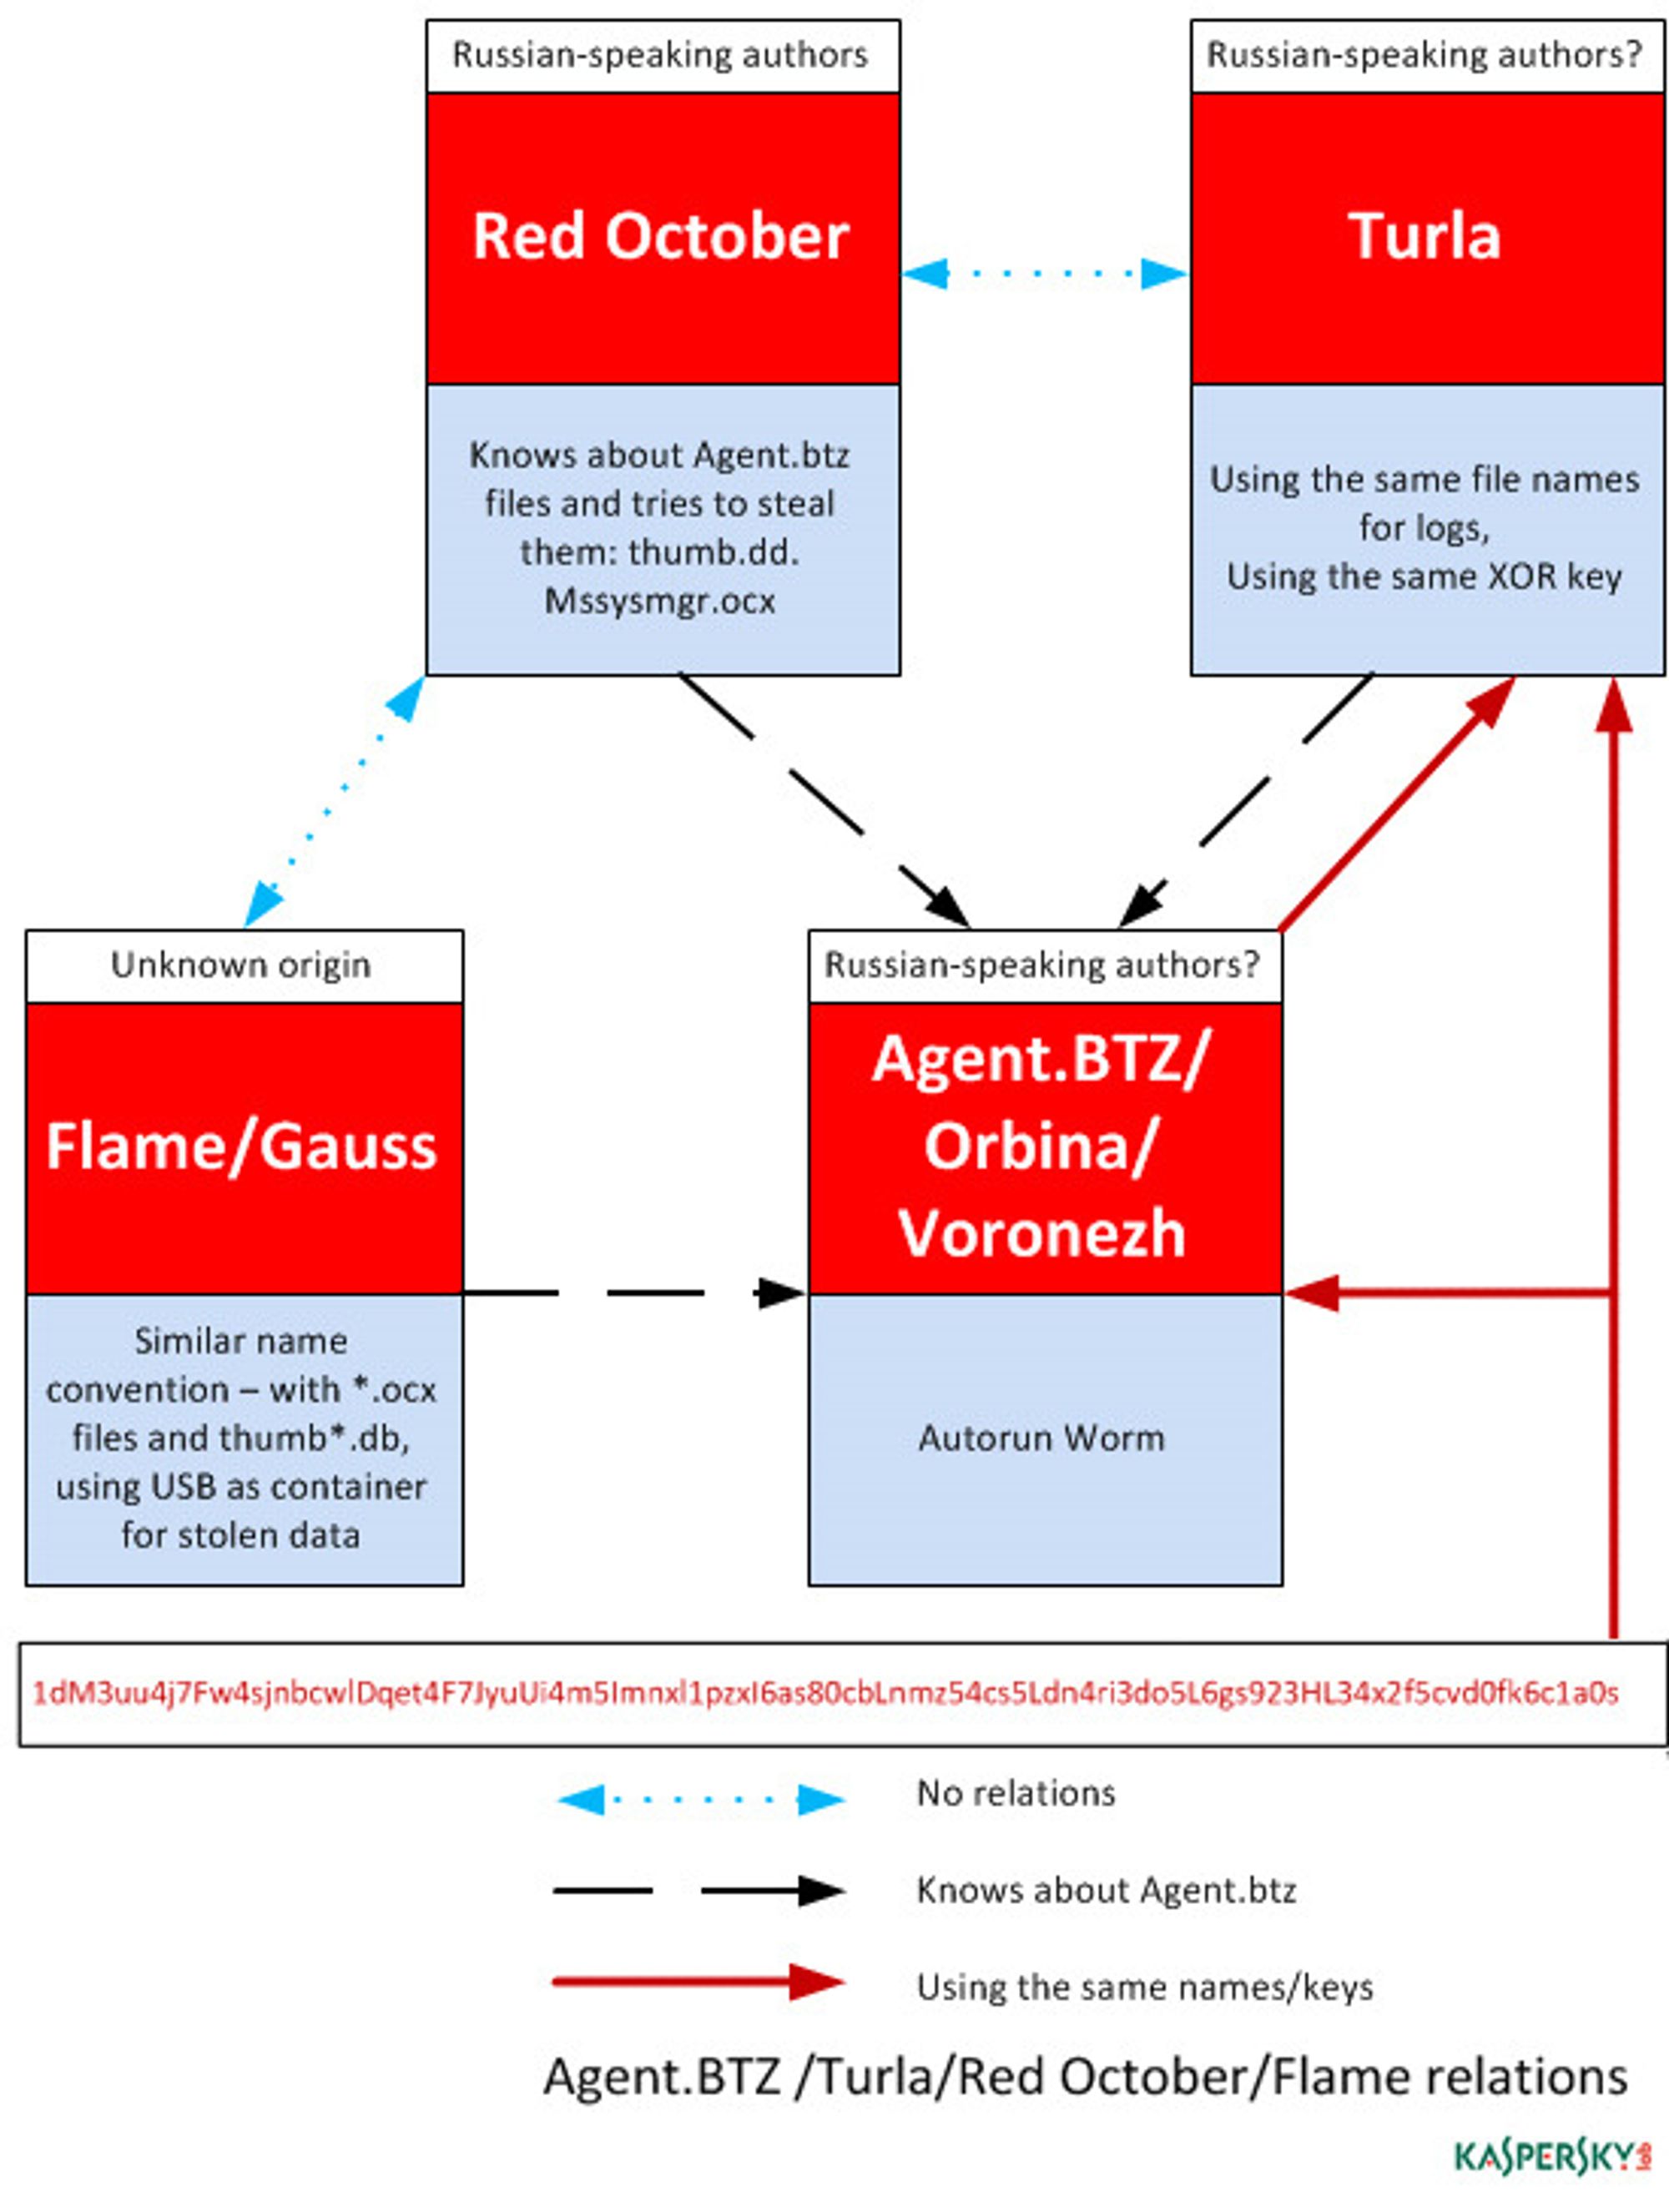 Agent.btz spiller en rolle for kyberspioner i både øst og vest.